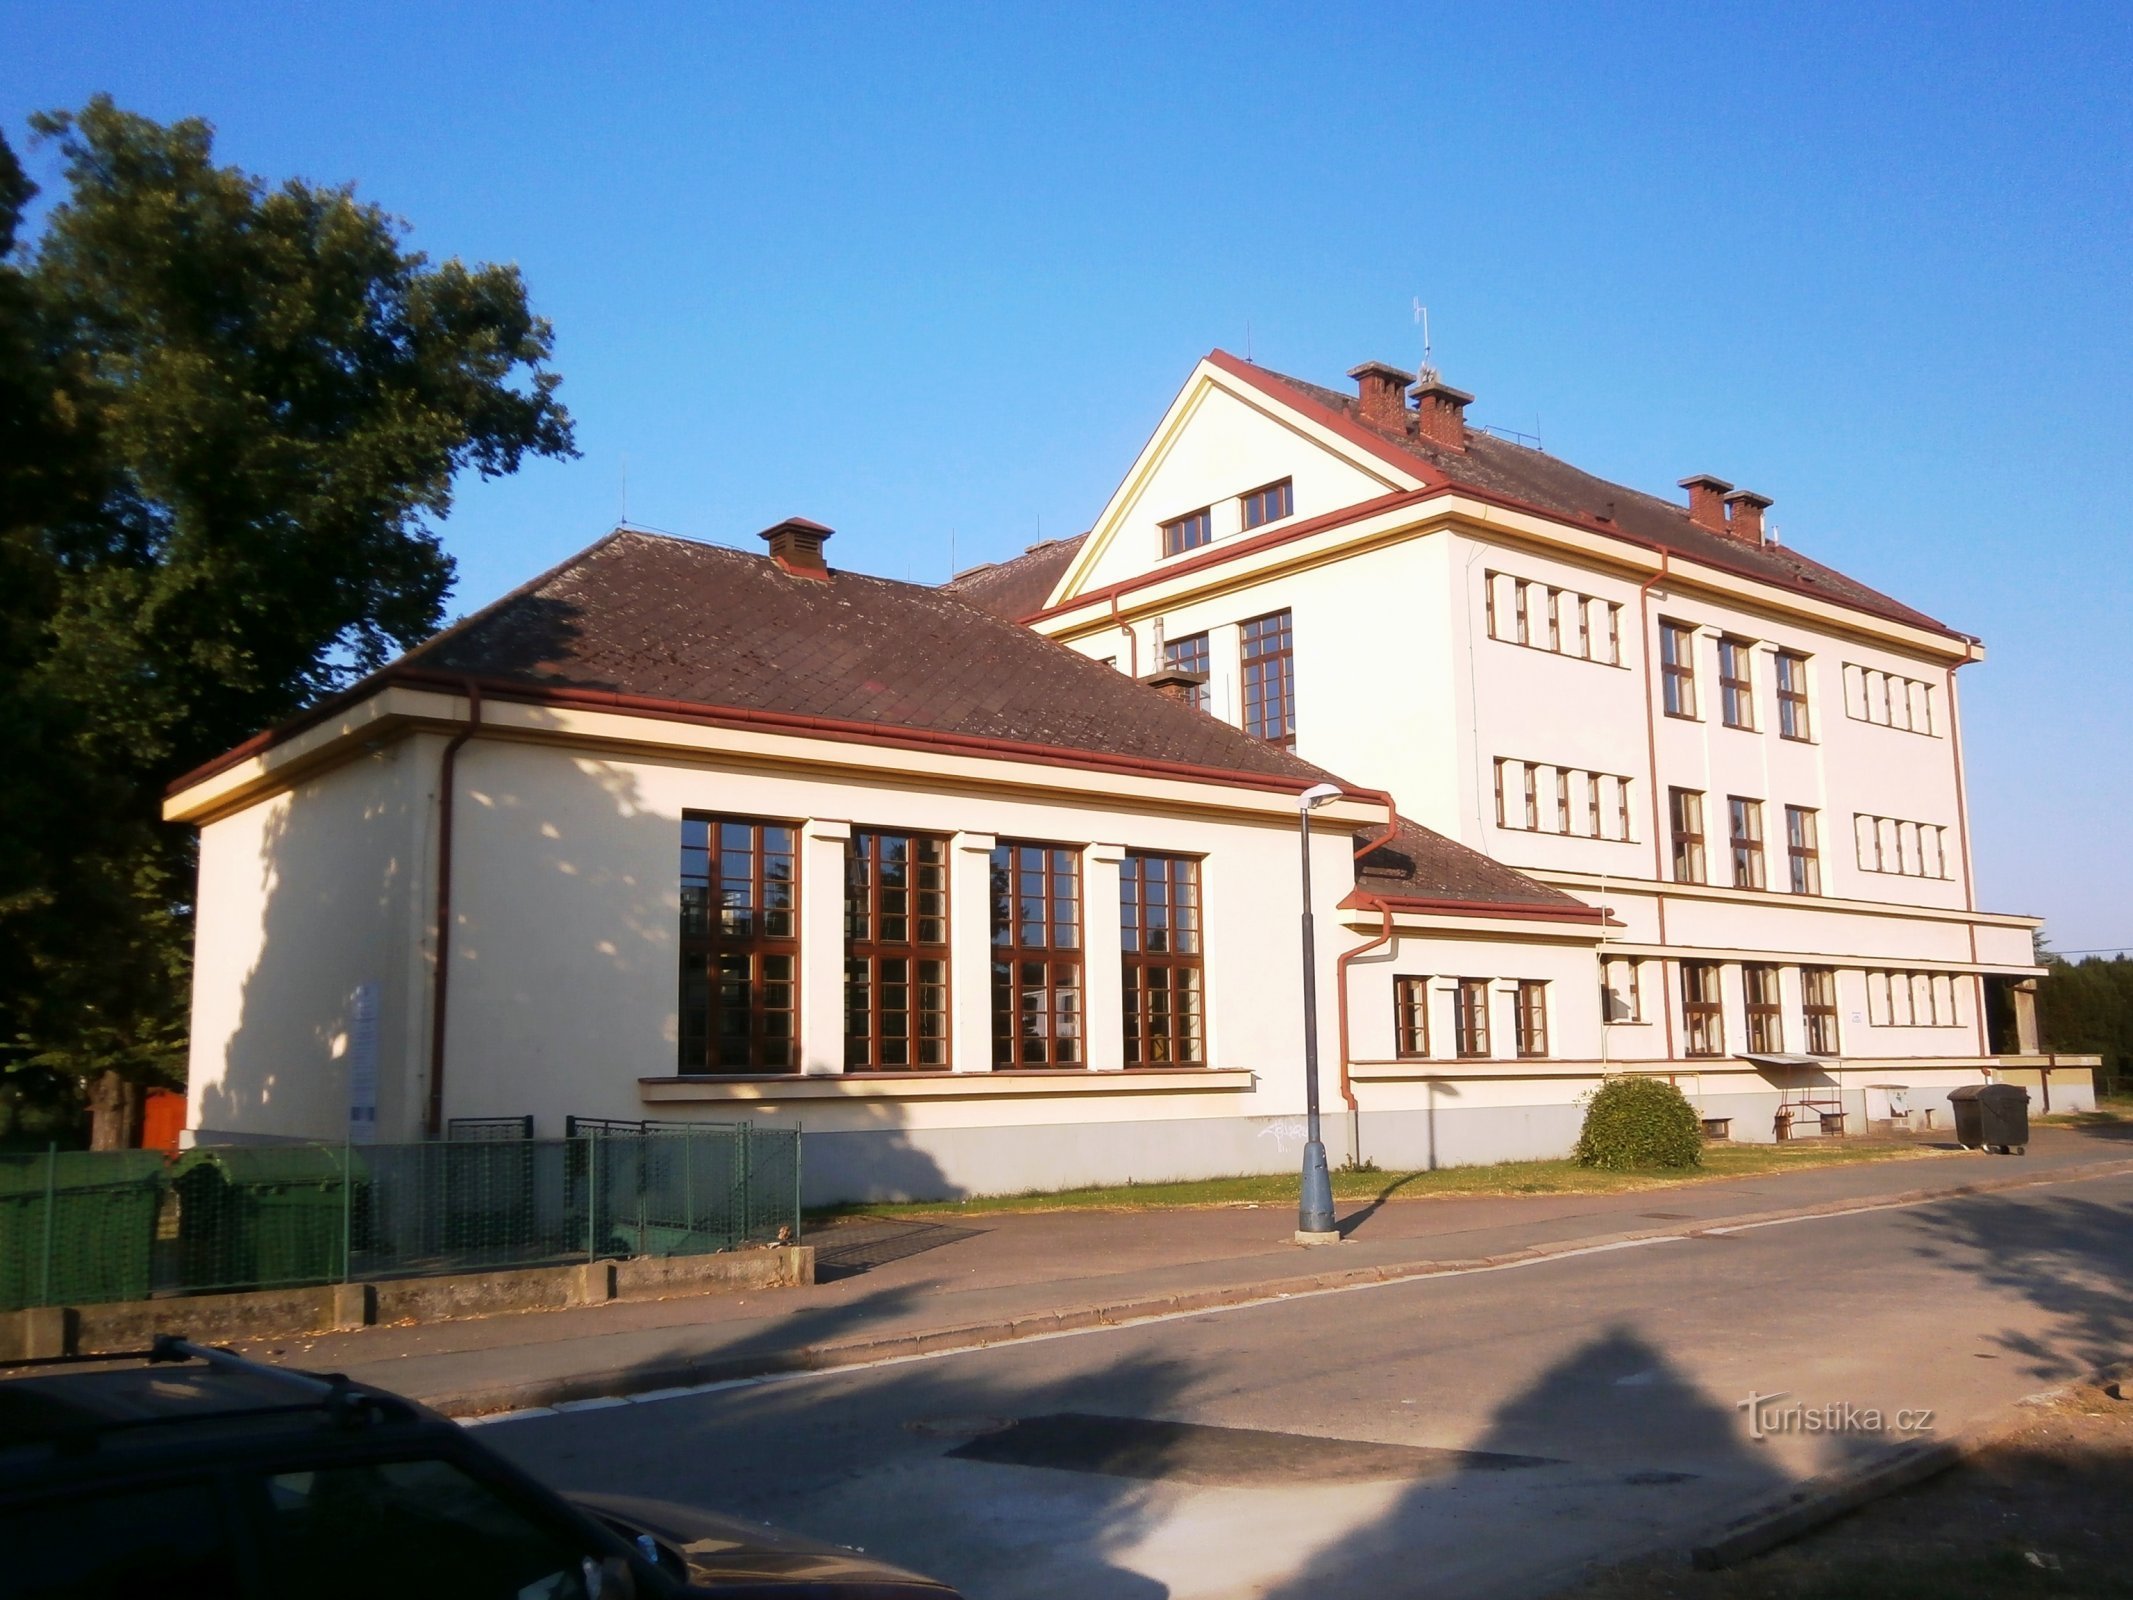 Masarykova osnovna šola v Plotiště nad Labem (Hradec Králové, 28.7.2013. XNUMX. XNUMX)